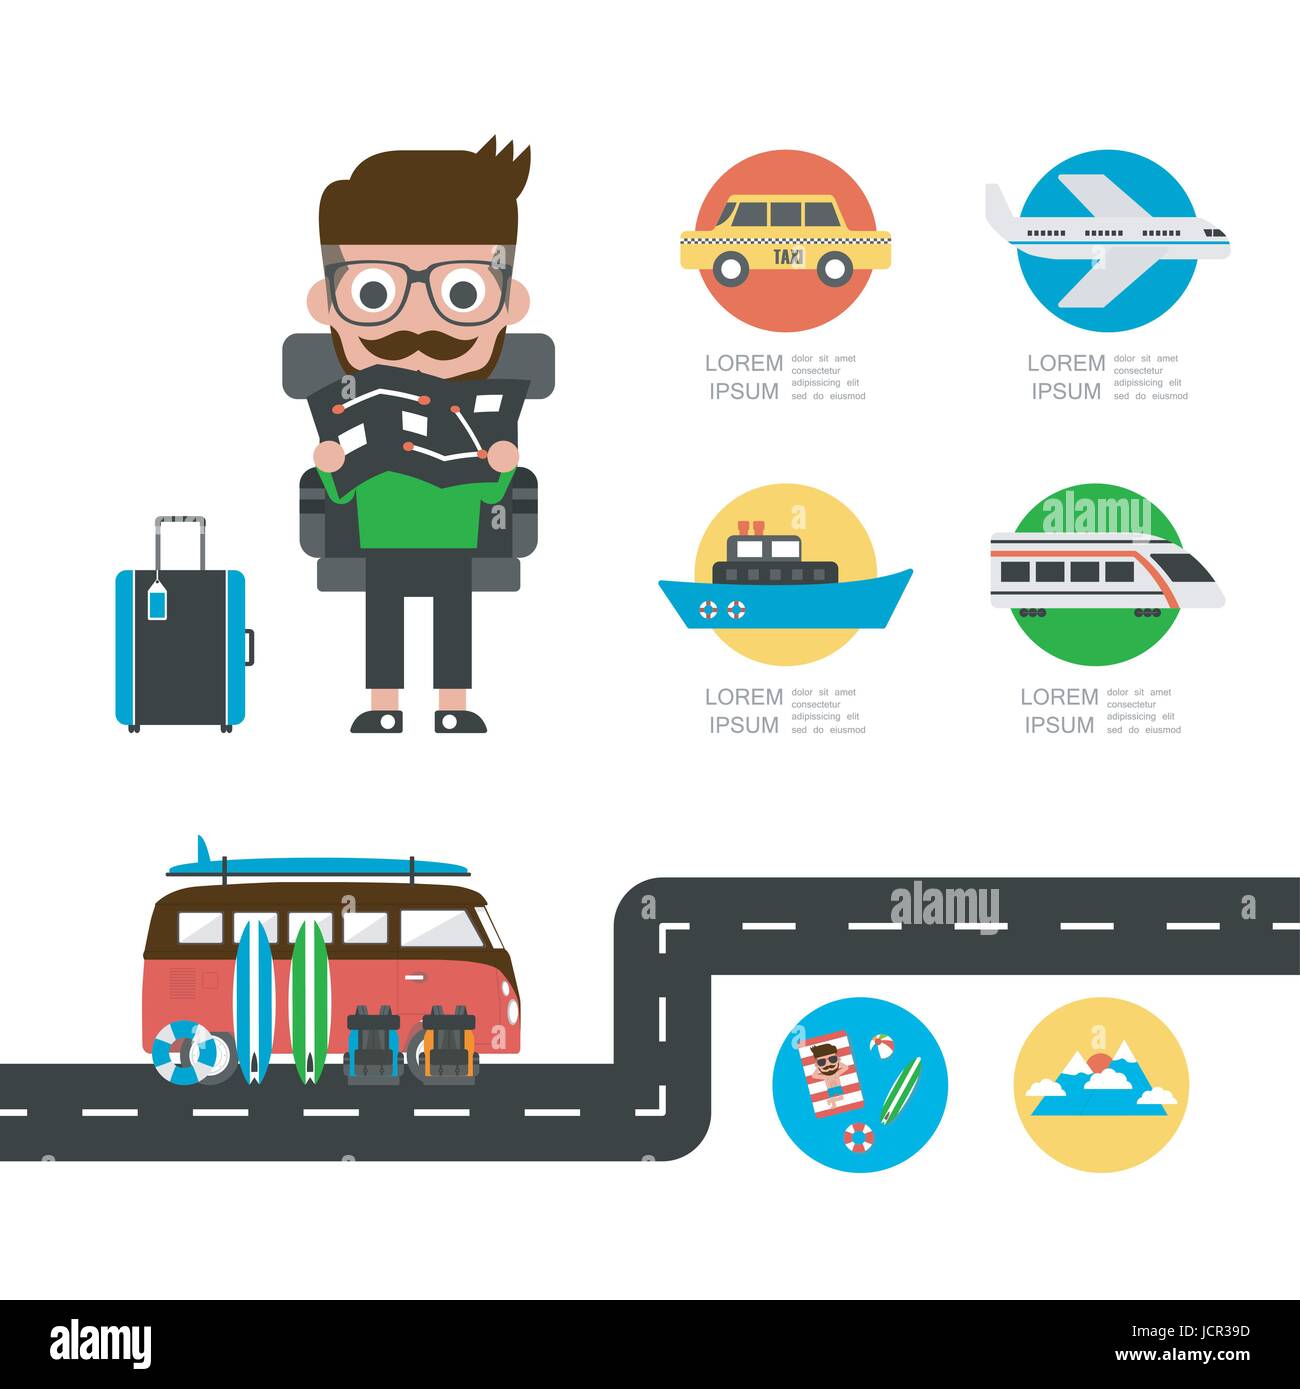 touristische Karte auf Urlaub, Reisen Infografik, isoliert auf weißem Hintergrund Stock Vektor